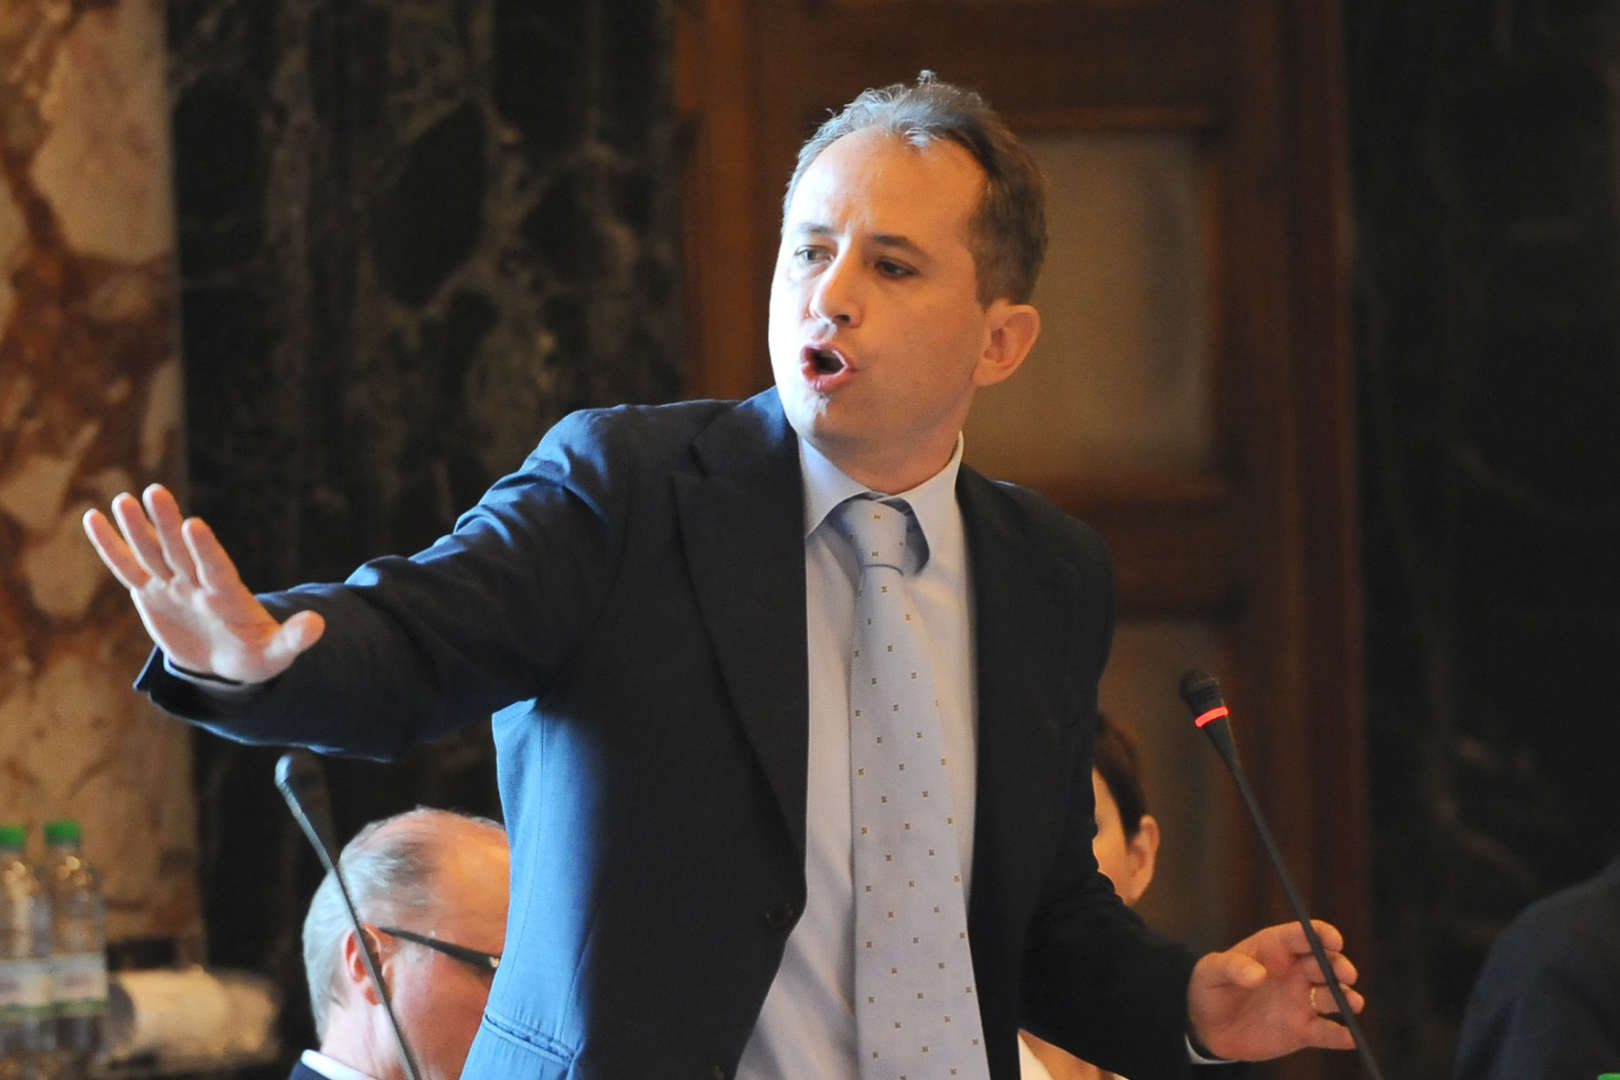 Roberto Celano: “La delega alla trasparenza? Inutile, c’è già il procuratore Borrelli”